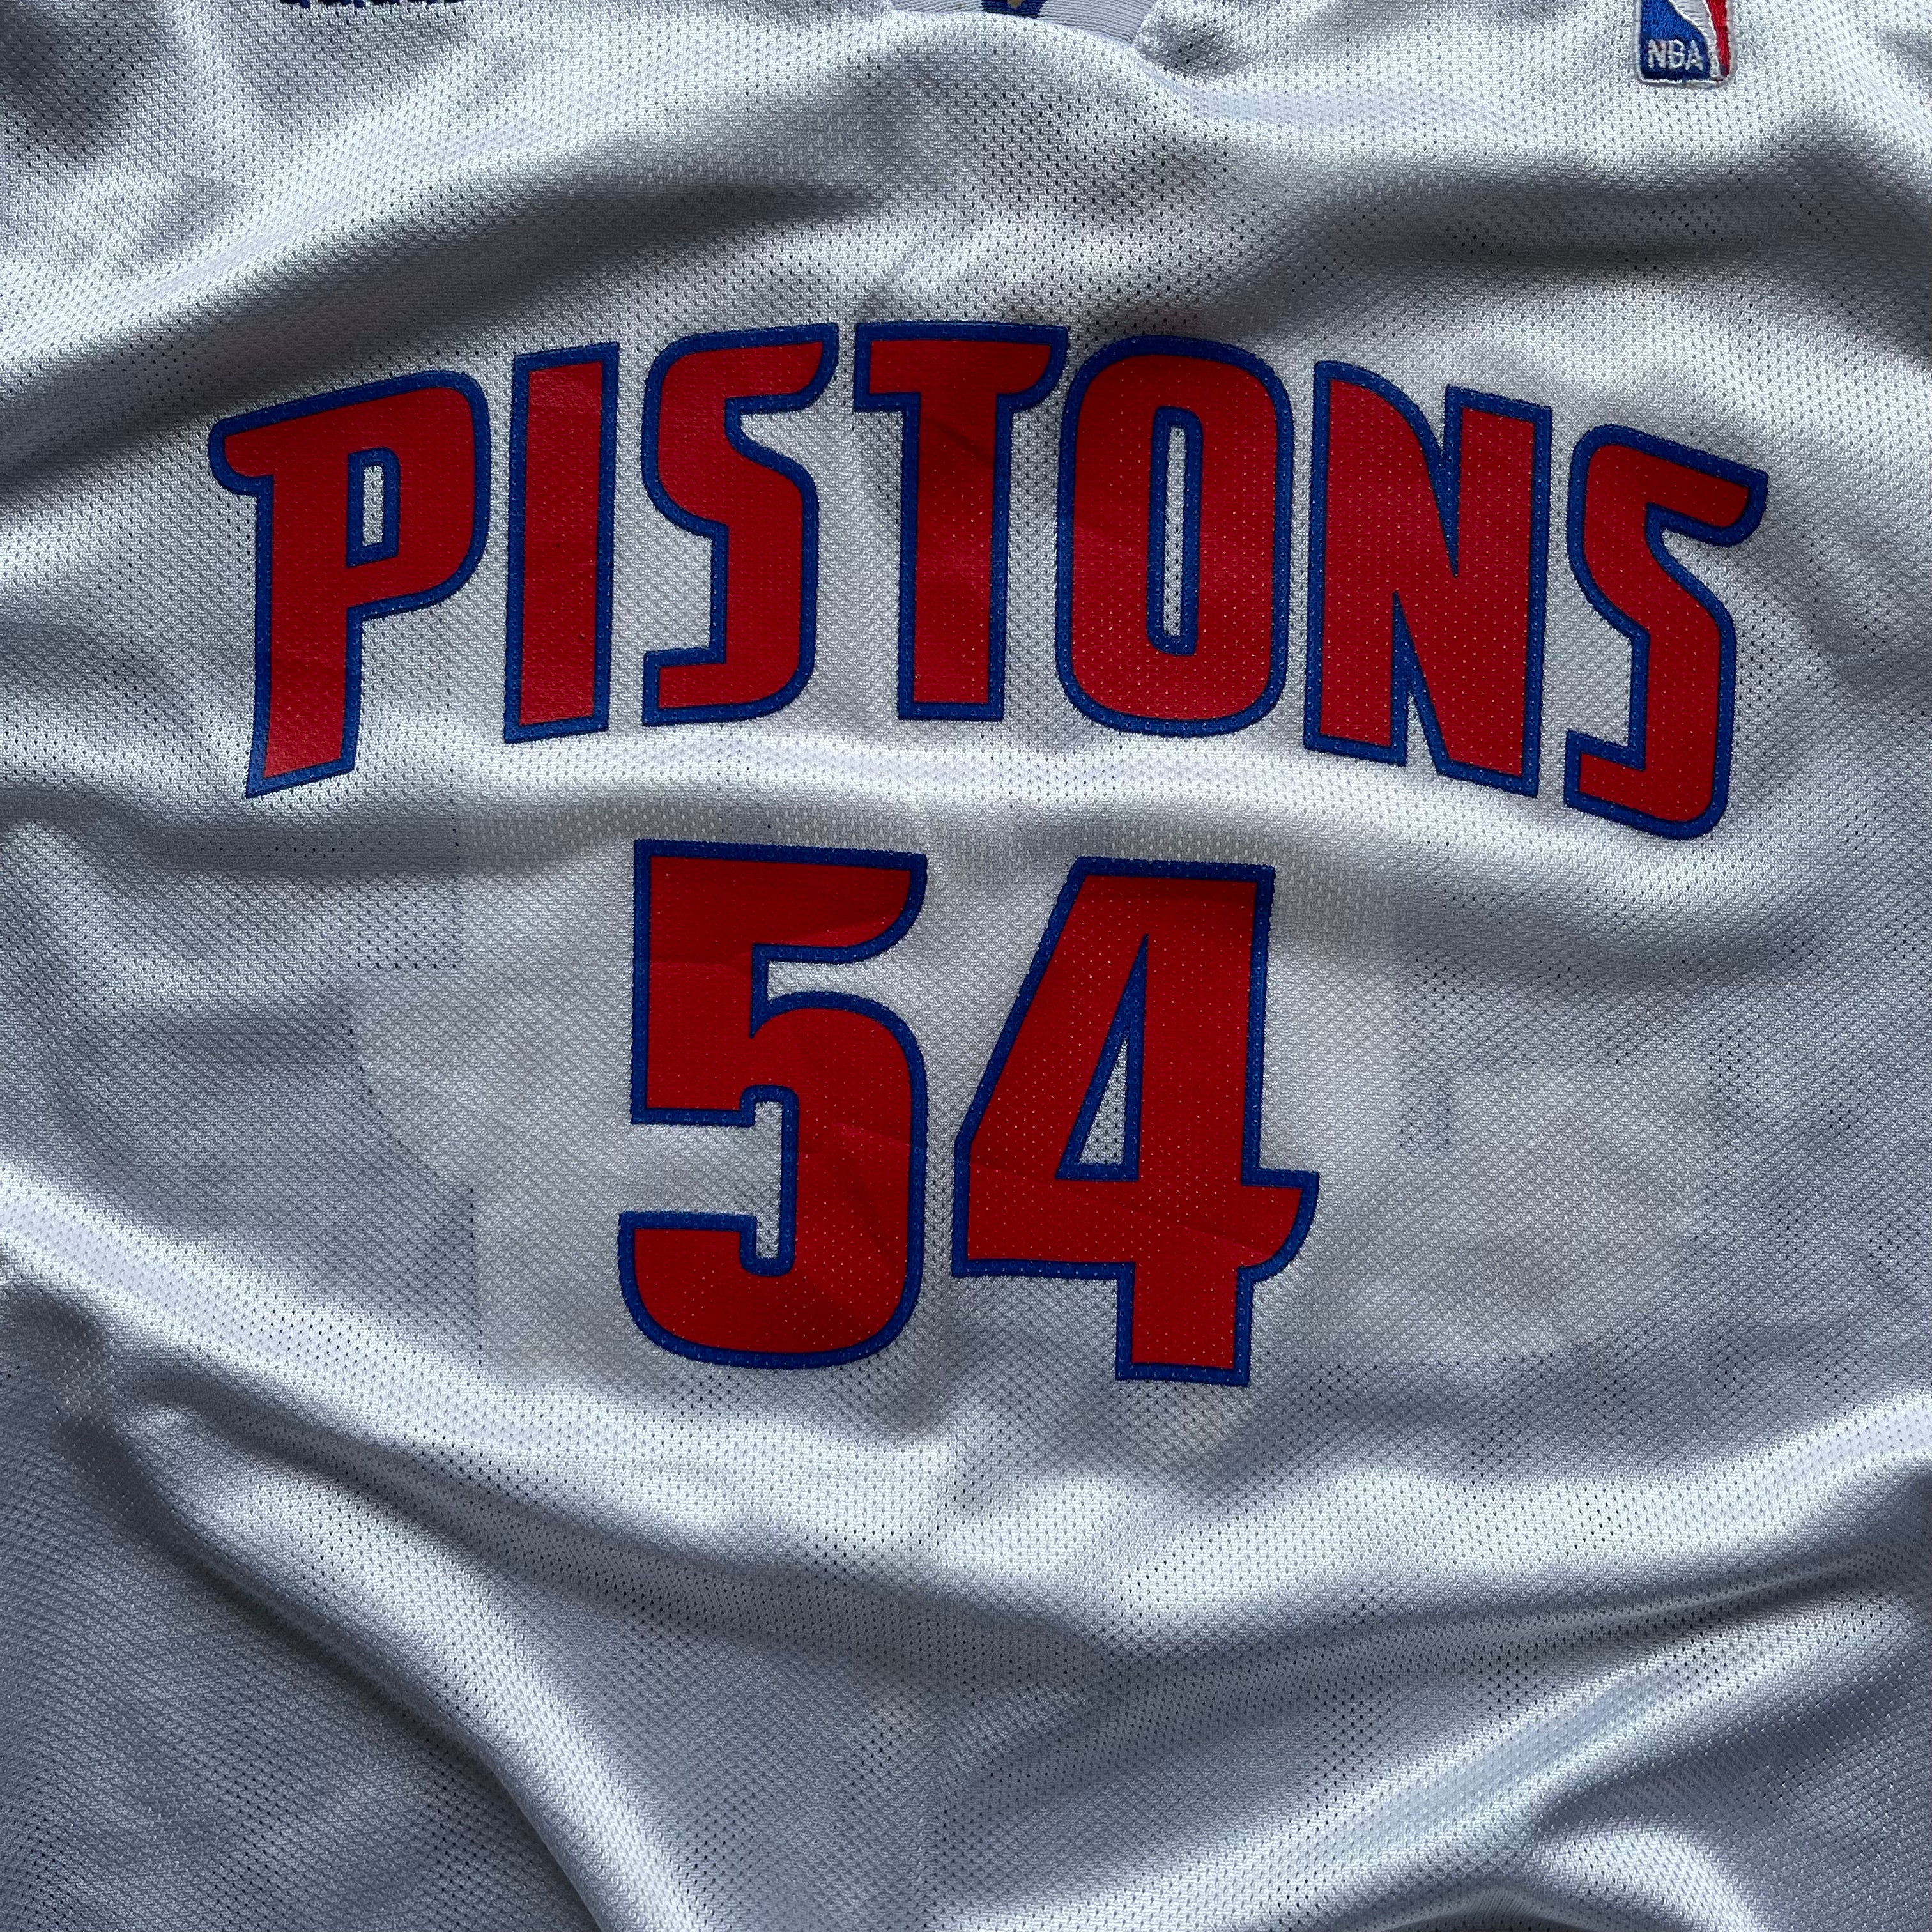 Vintage NBA Pistons Basketball Jersey (Size L)